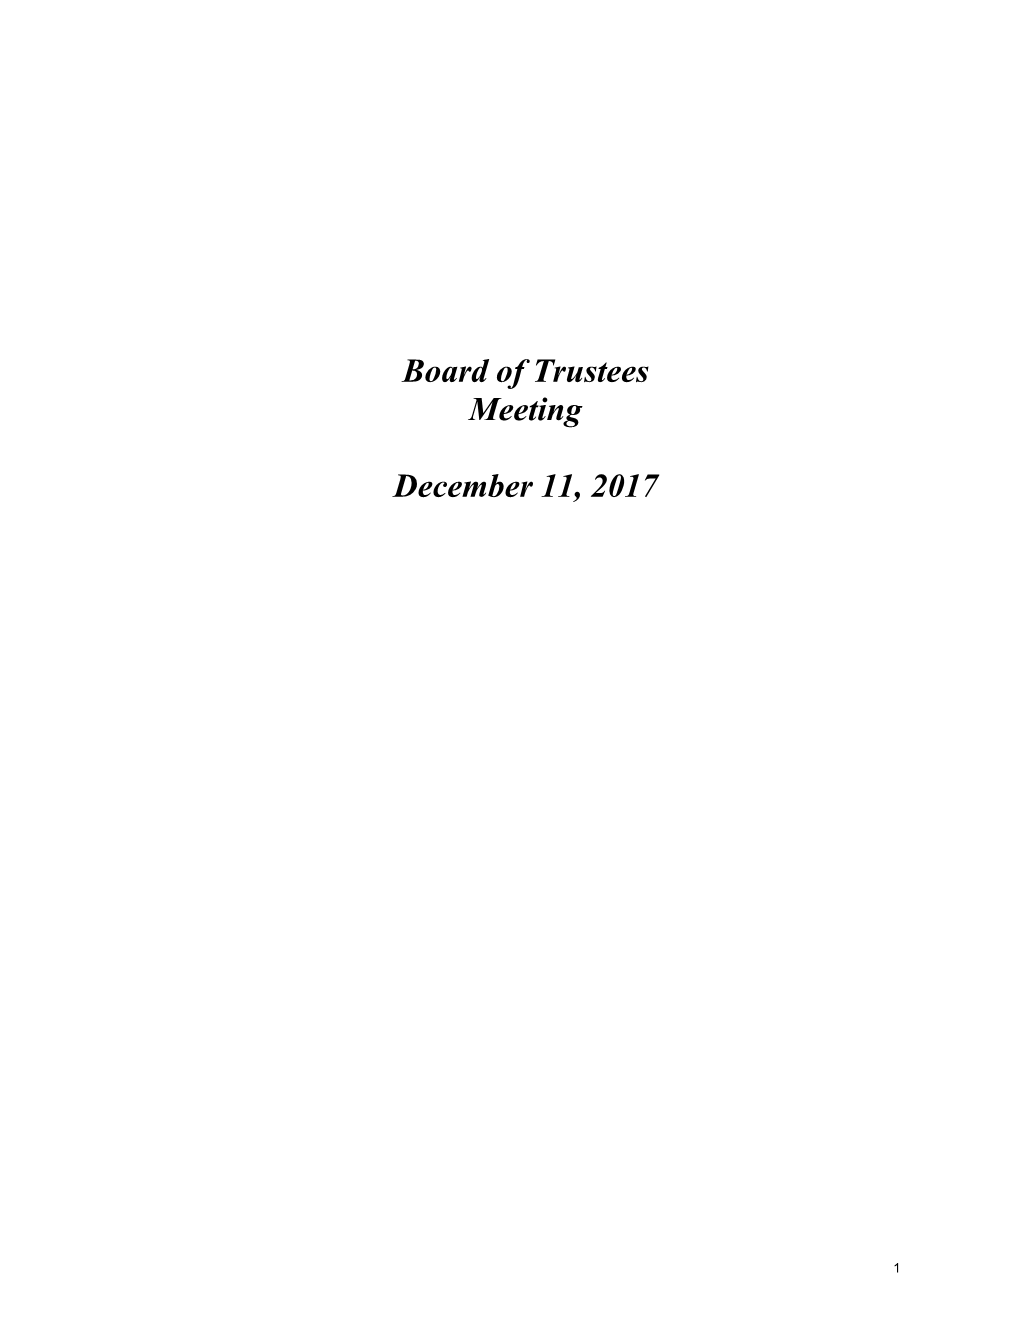 Board of Trustees Meeting December 11, 2017